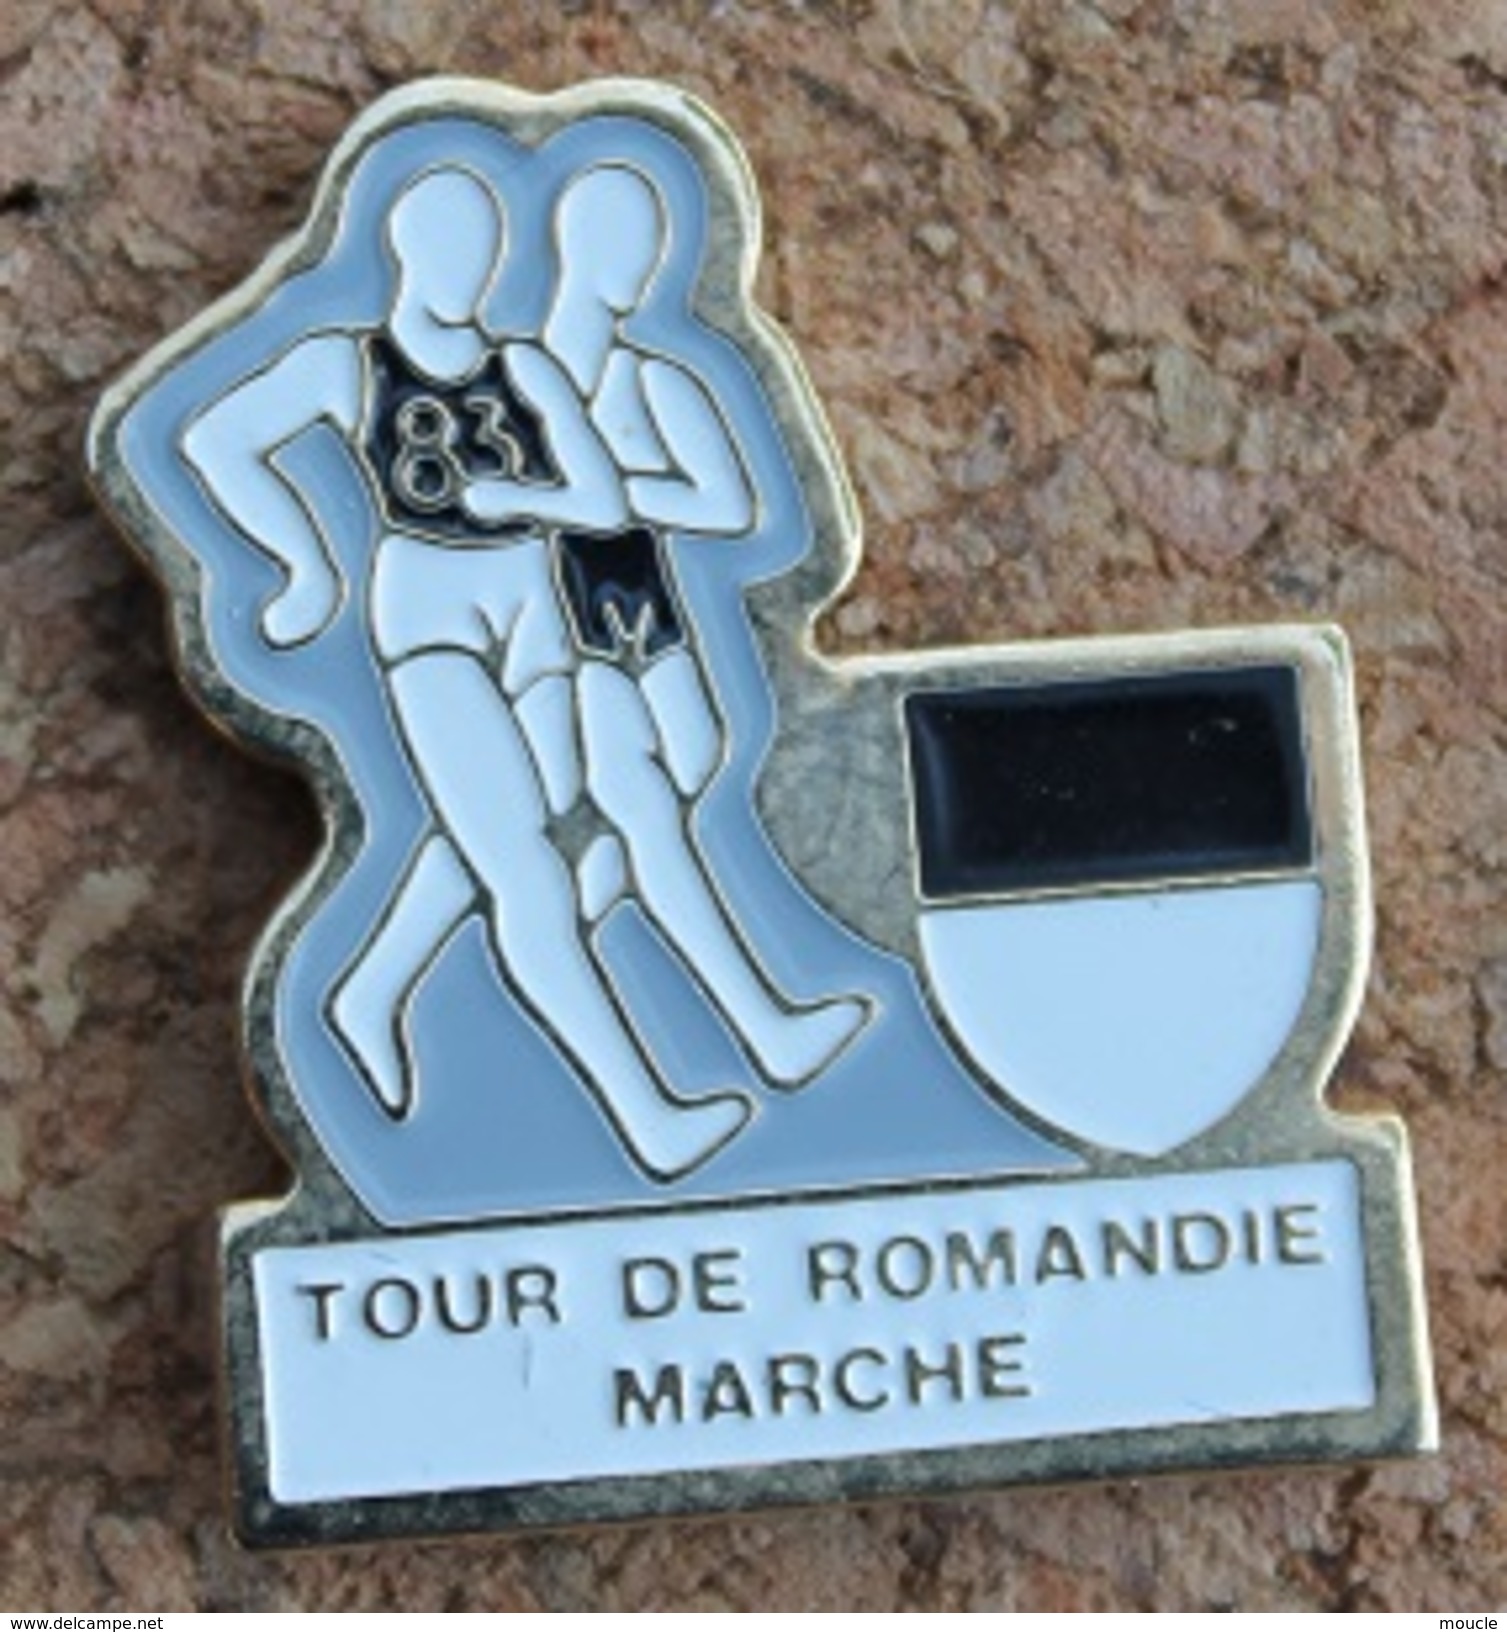 TOUR DE ROMANDIE A LA MARCHE - SUISSE - ETAPE DU CANTON DE FRIBOURG - MARCHEURS  -  SCHWEIZ - SVIZZERA - SUIZA -   (13) - Atletiek